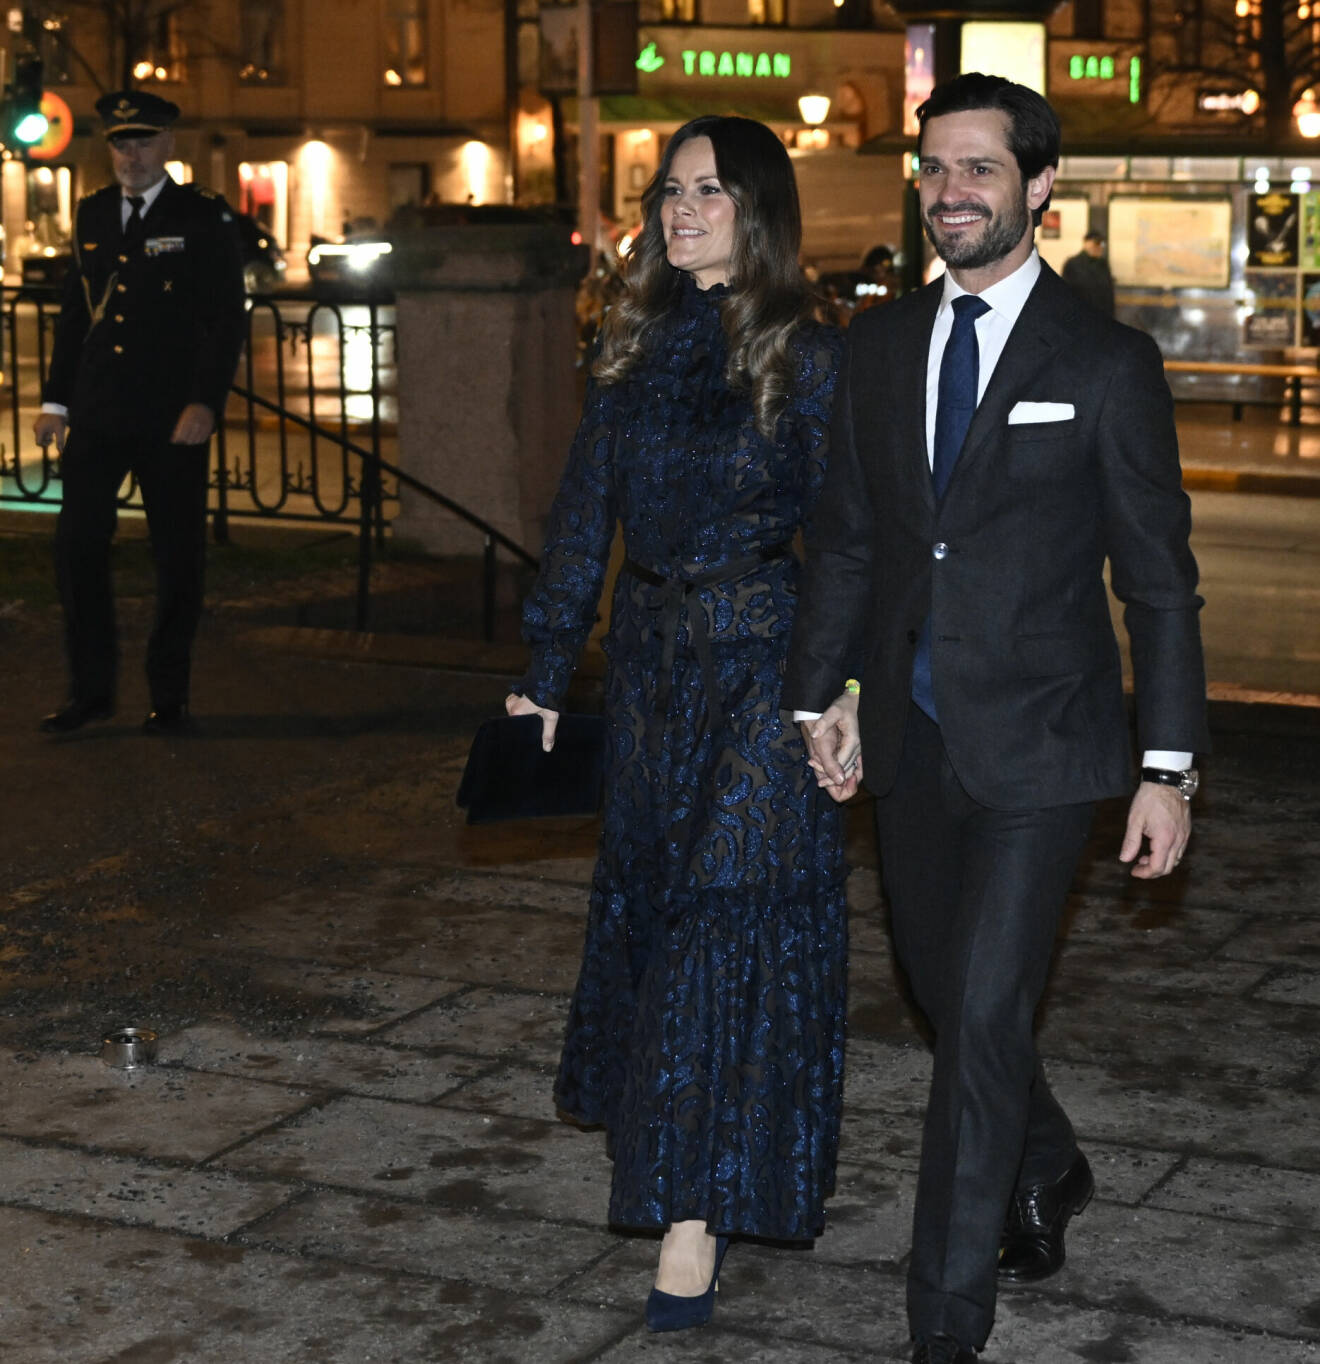 Prinsessan Sofia och prins Carl Philip anländer till Gustaf Vasa kyrka vid Odenplan i Stockholm